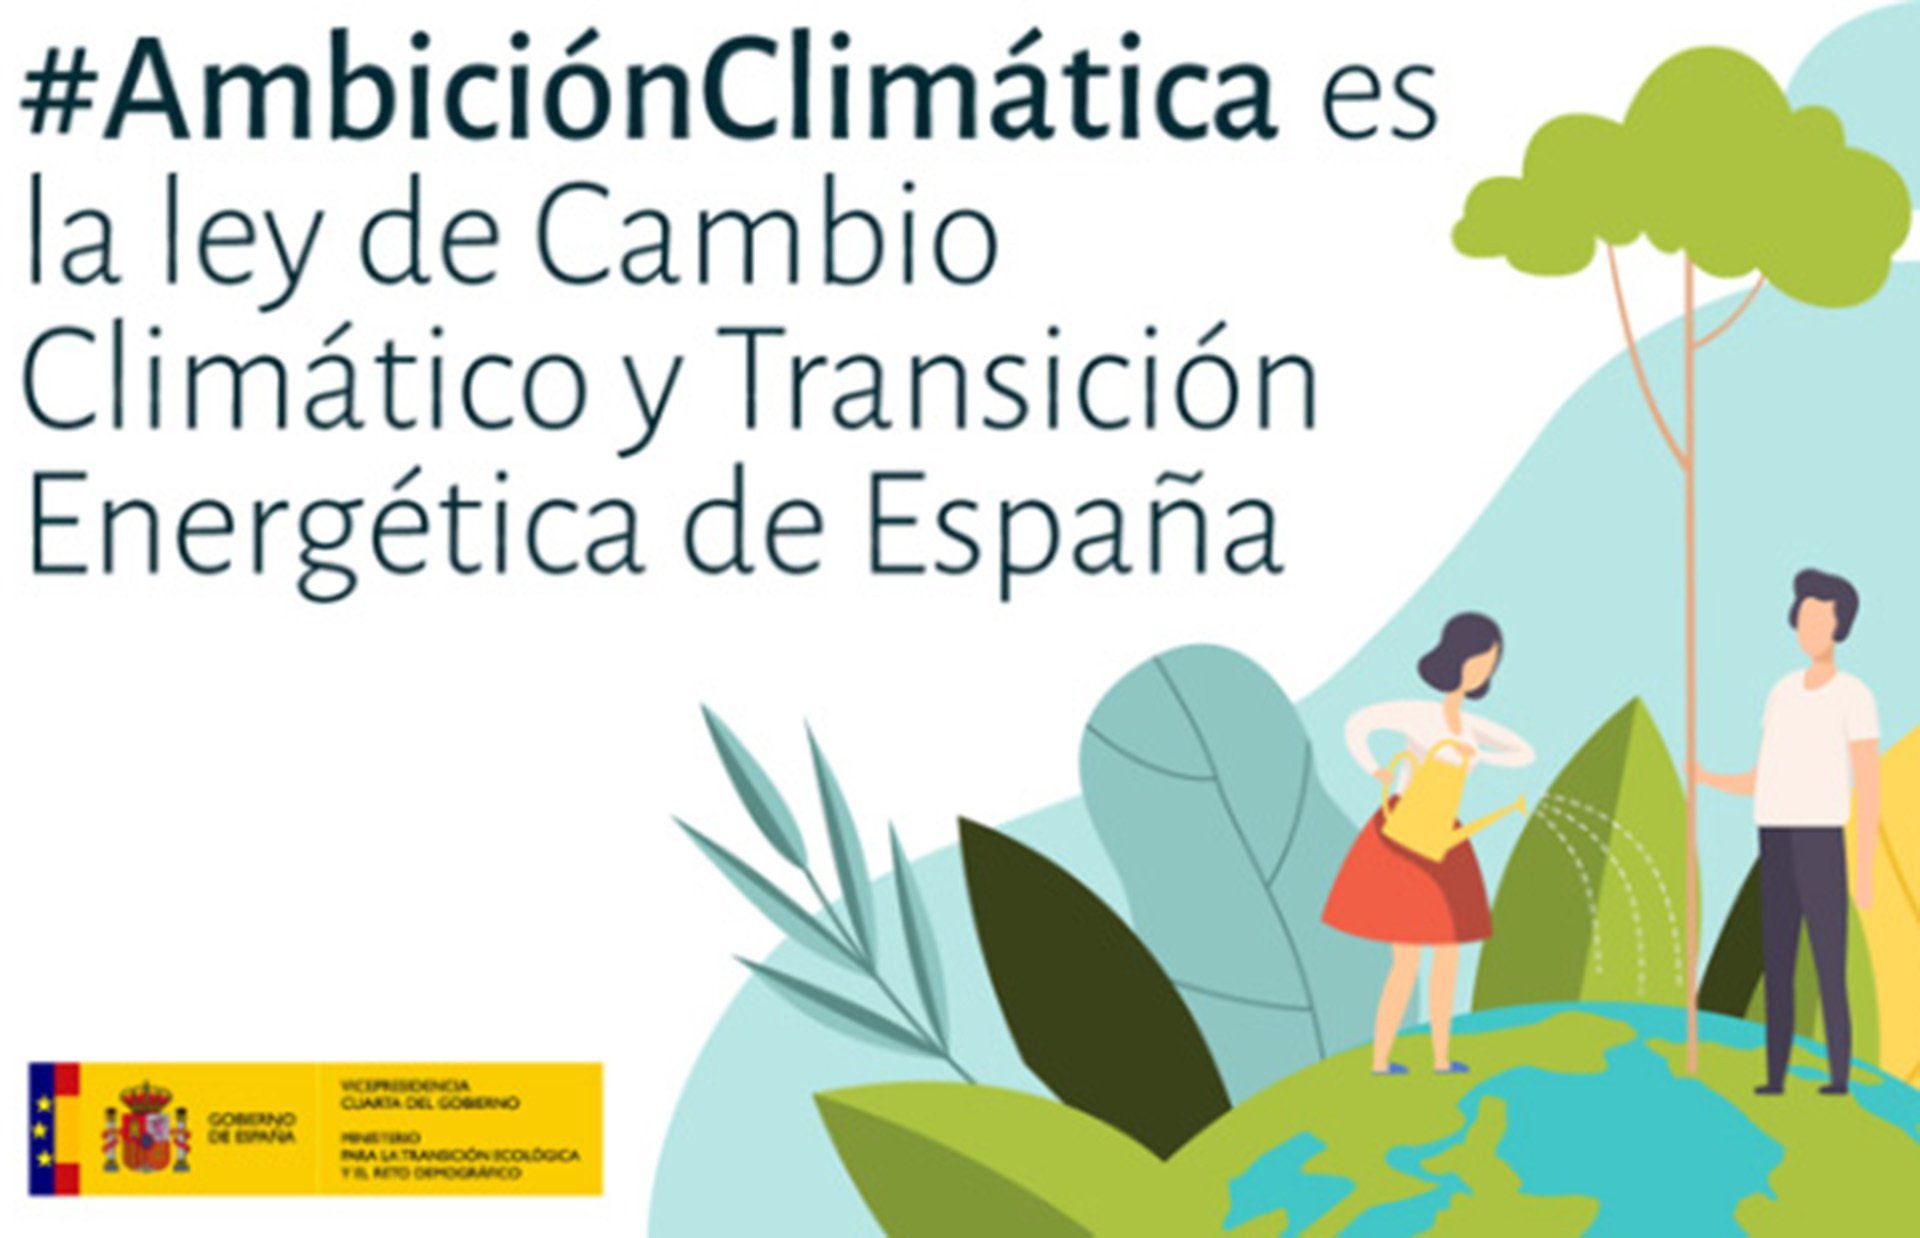 Aprobado el proyecto de Ley de Cambio Climático y Transición Energética de España